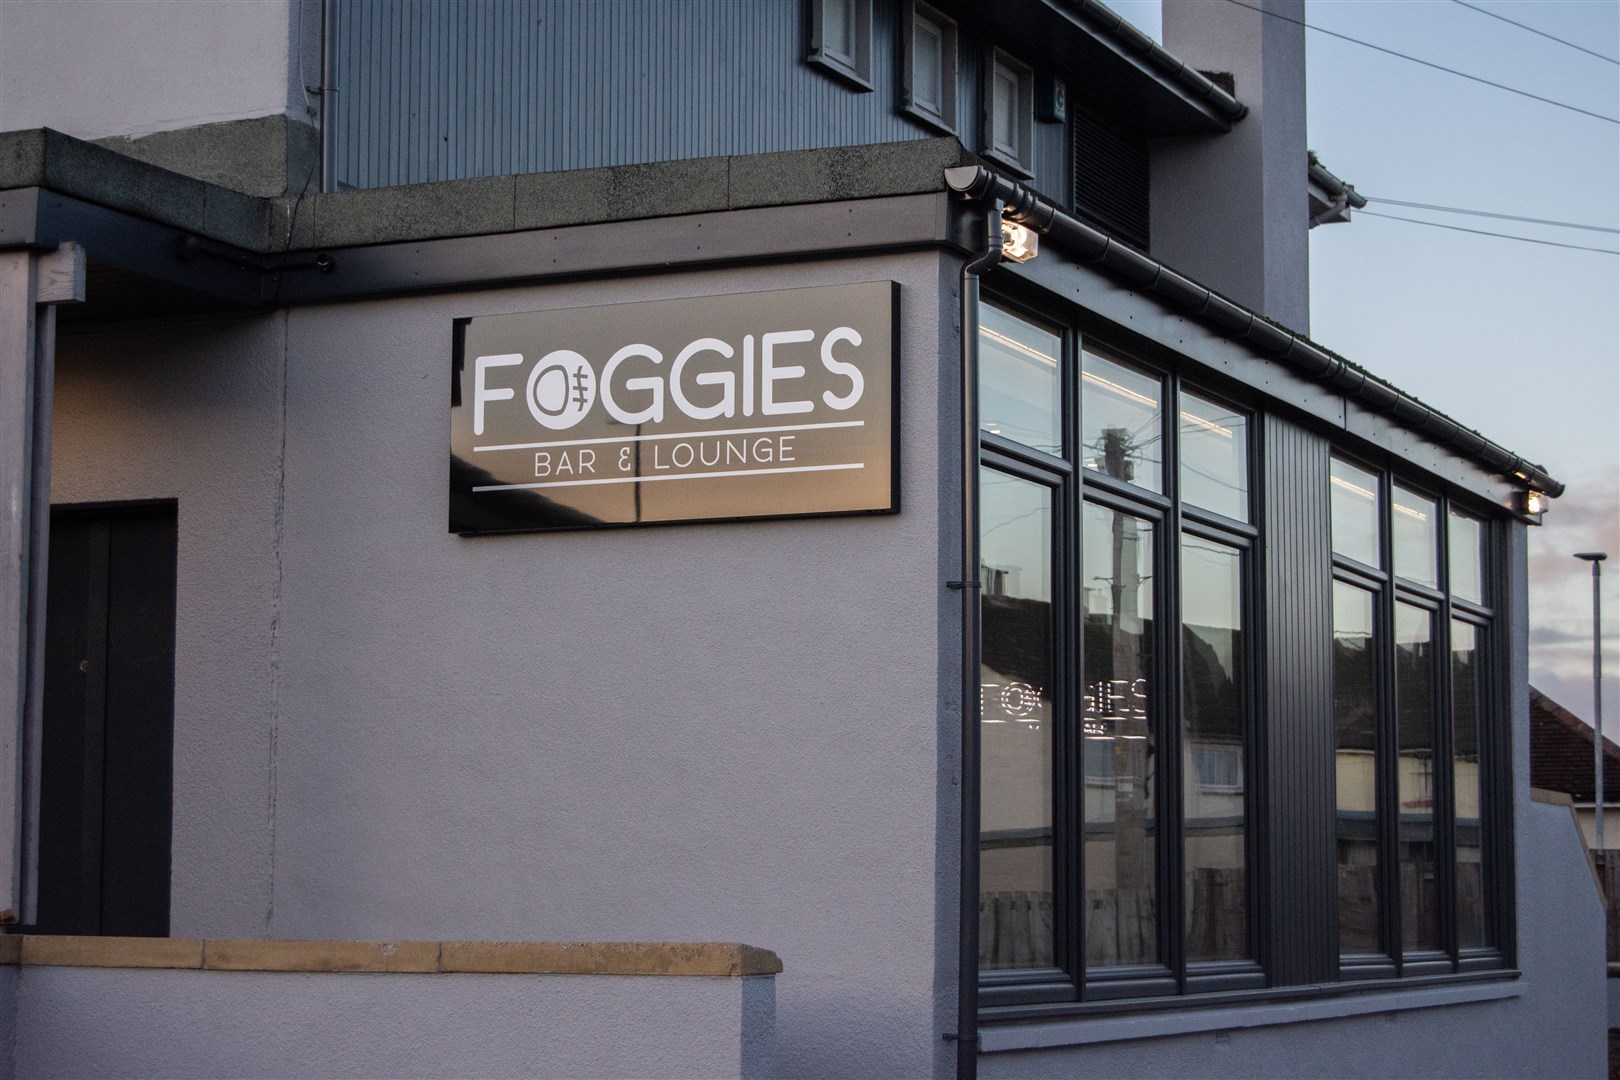 Foggies Bar and Lounge in Elgin.